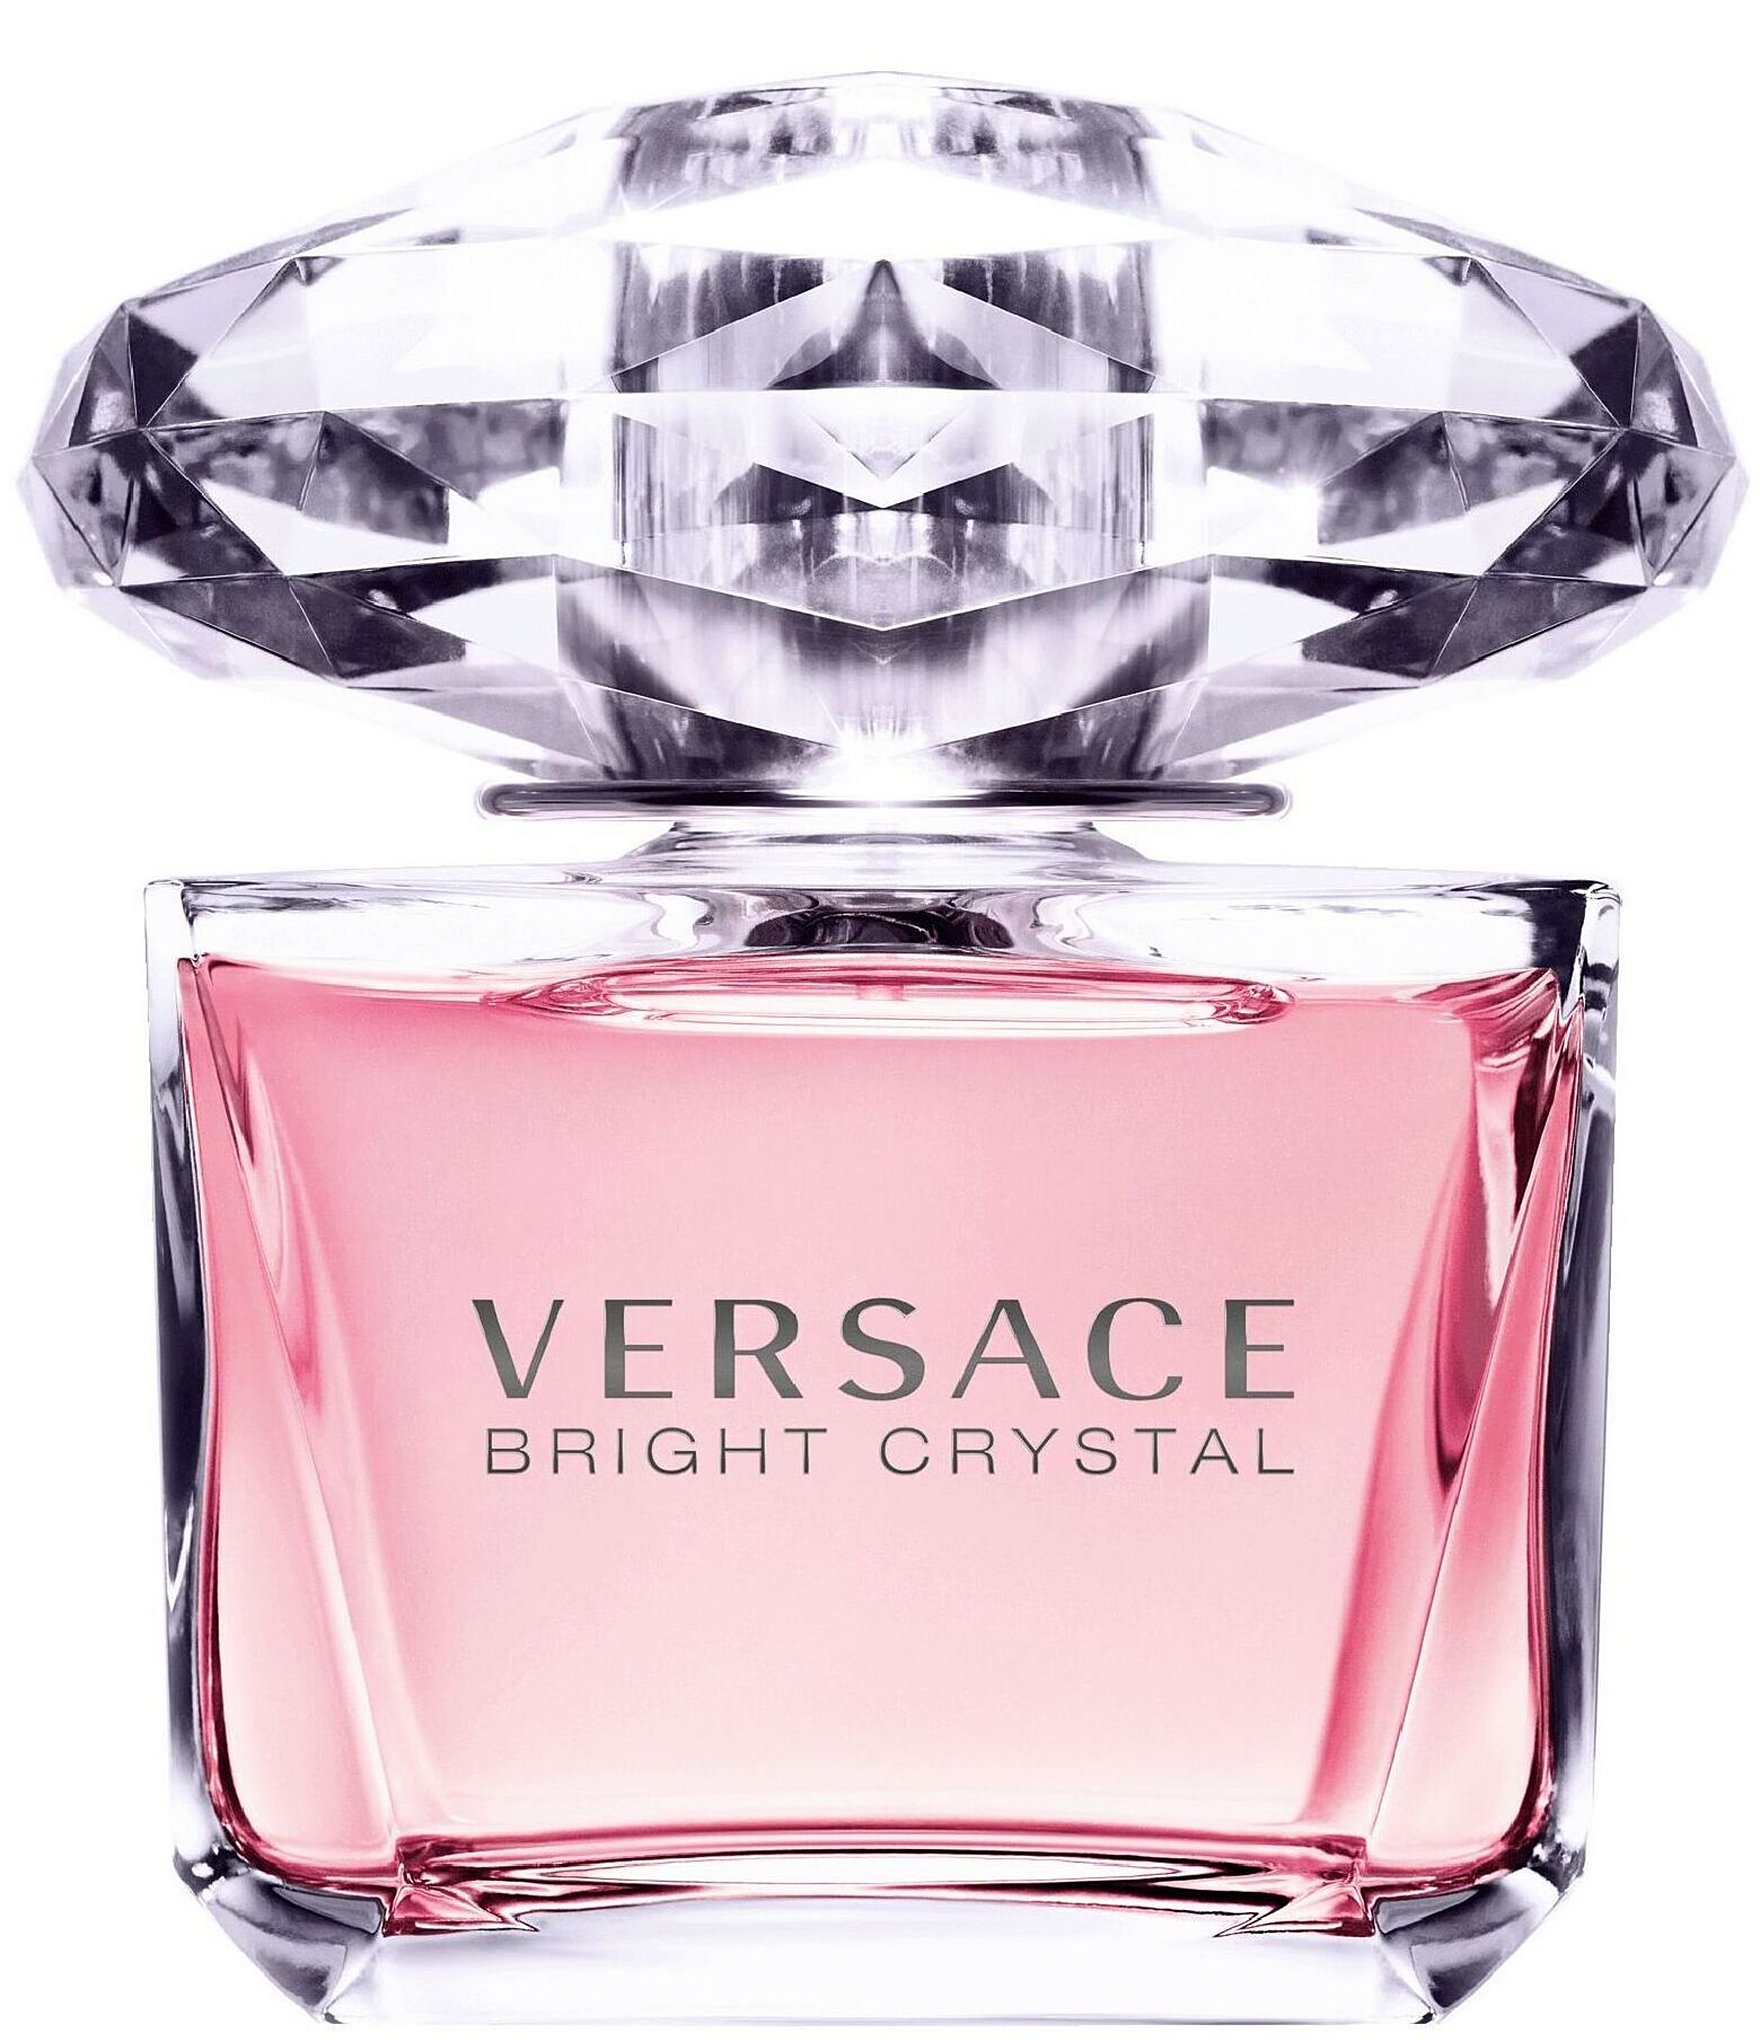 Versace Bright Crystal Eau de Toilette Spray | Dillards